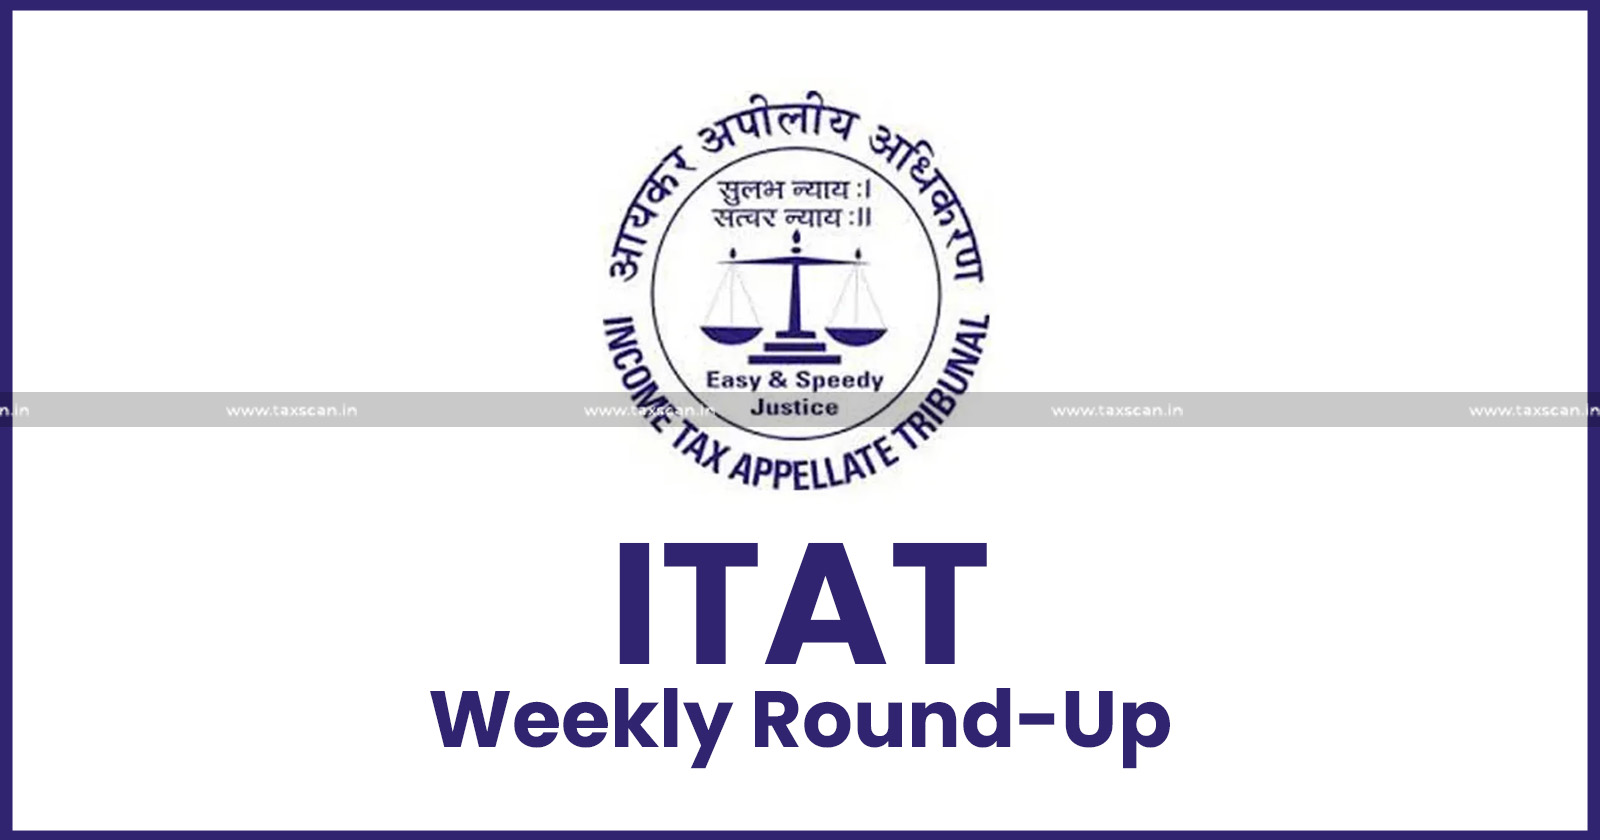 ITAT news - ITAT cases - Income tax news - ITAT weekly round up - Tax updates - taxscan